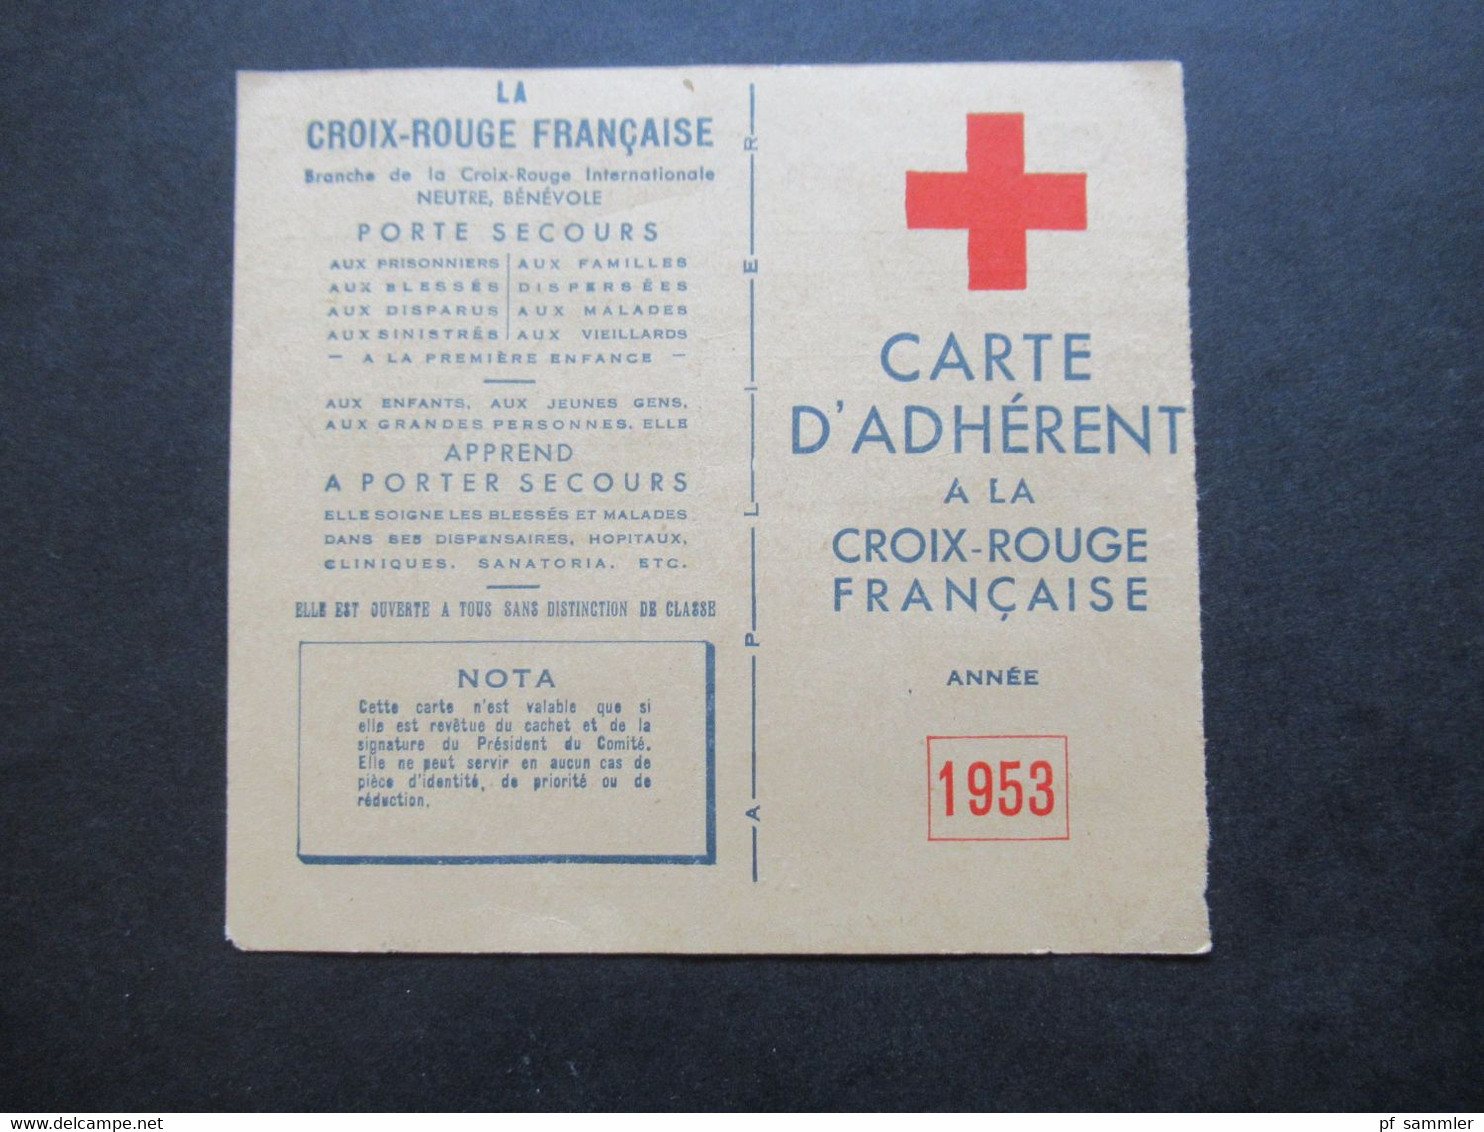 Frankreich 1953 Vignette Auf Carte D'Adherent Croix Rouge Francaise Mit Stempel Und Signe Le President Du Comité - Cinderellas